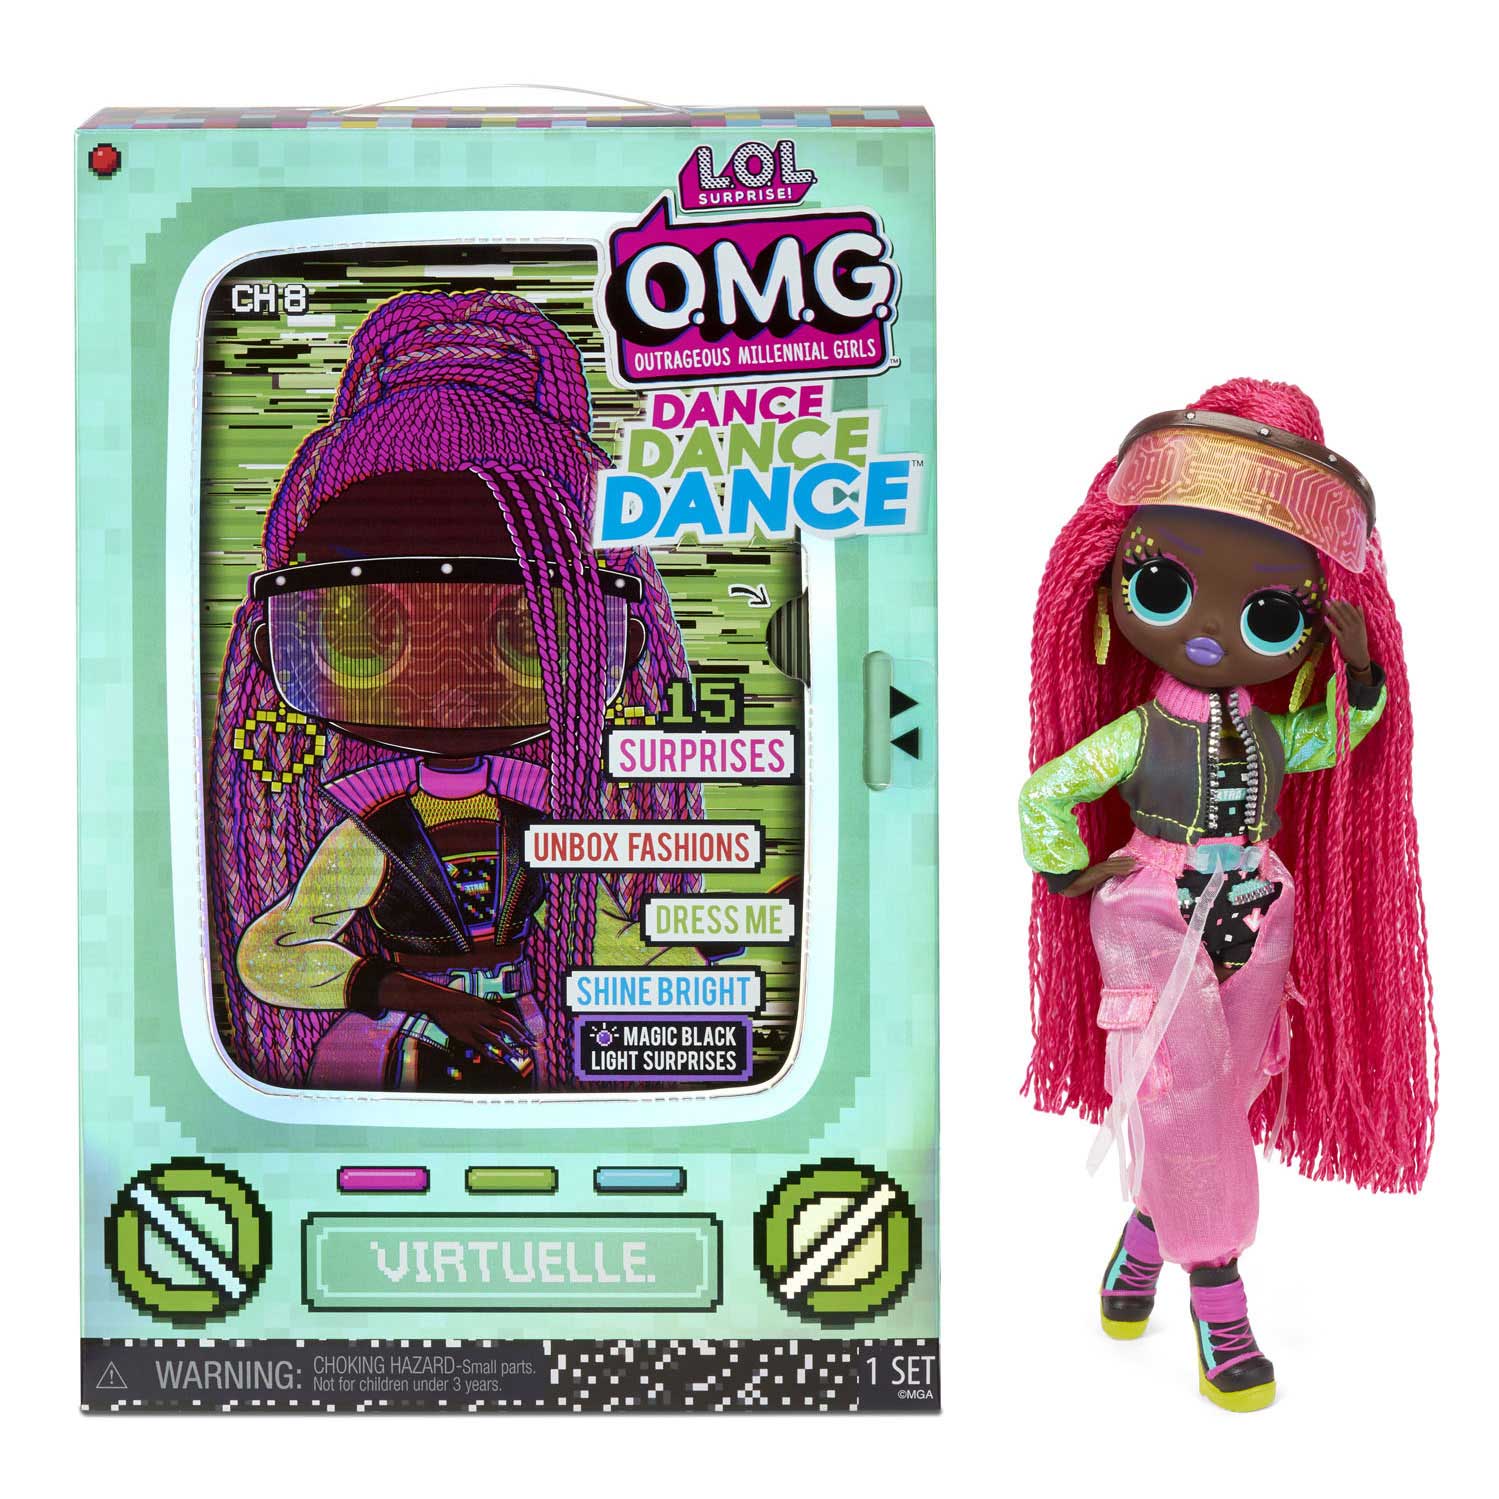 L.O.L. Surprise OMG Dance Pop - Virtuelle